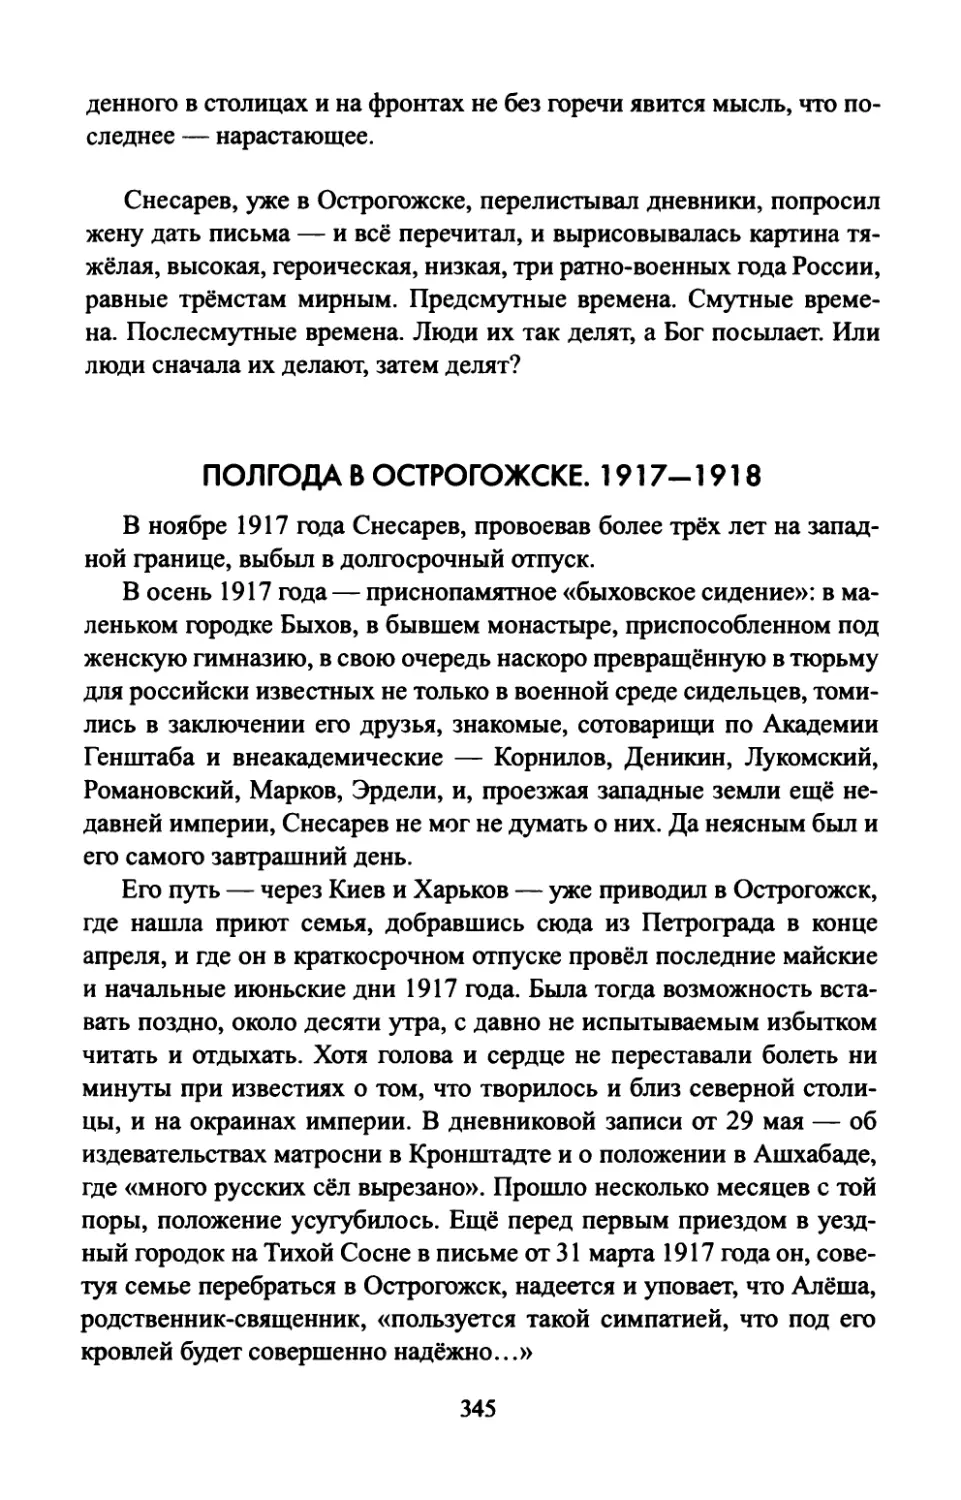 ПОЛГОДА  В  ОСТРОГОЖСКЕ.  1917—1918